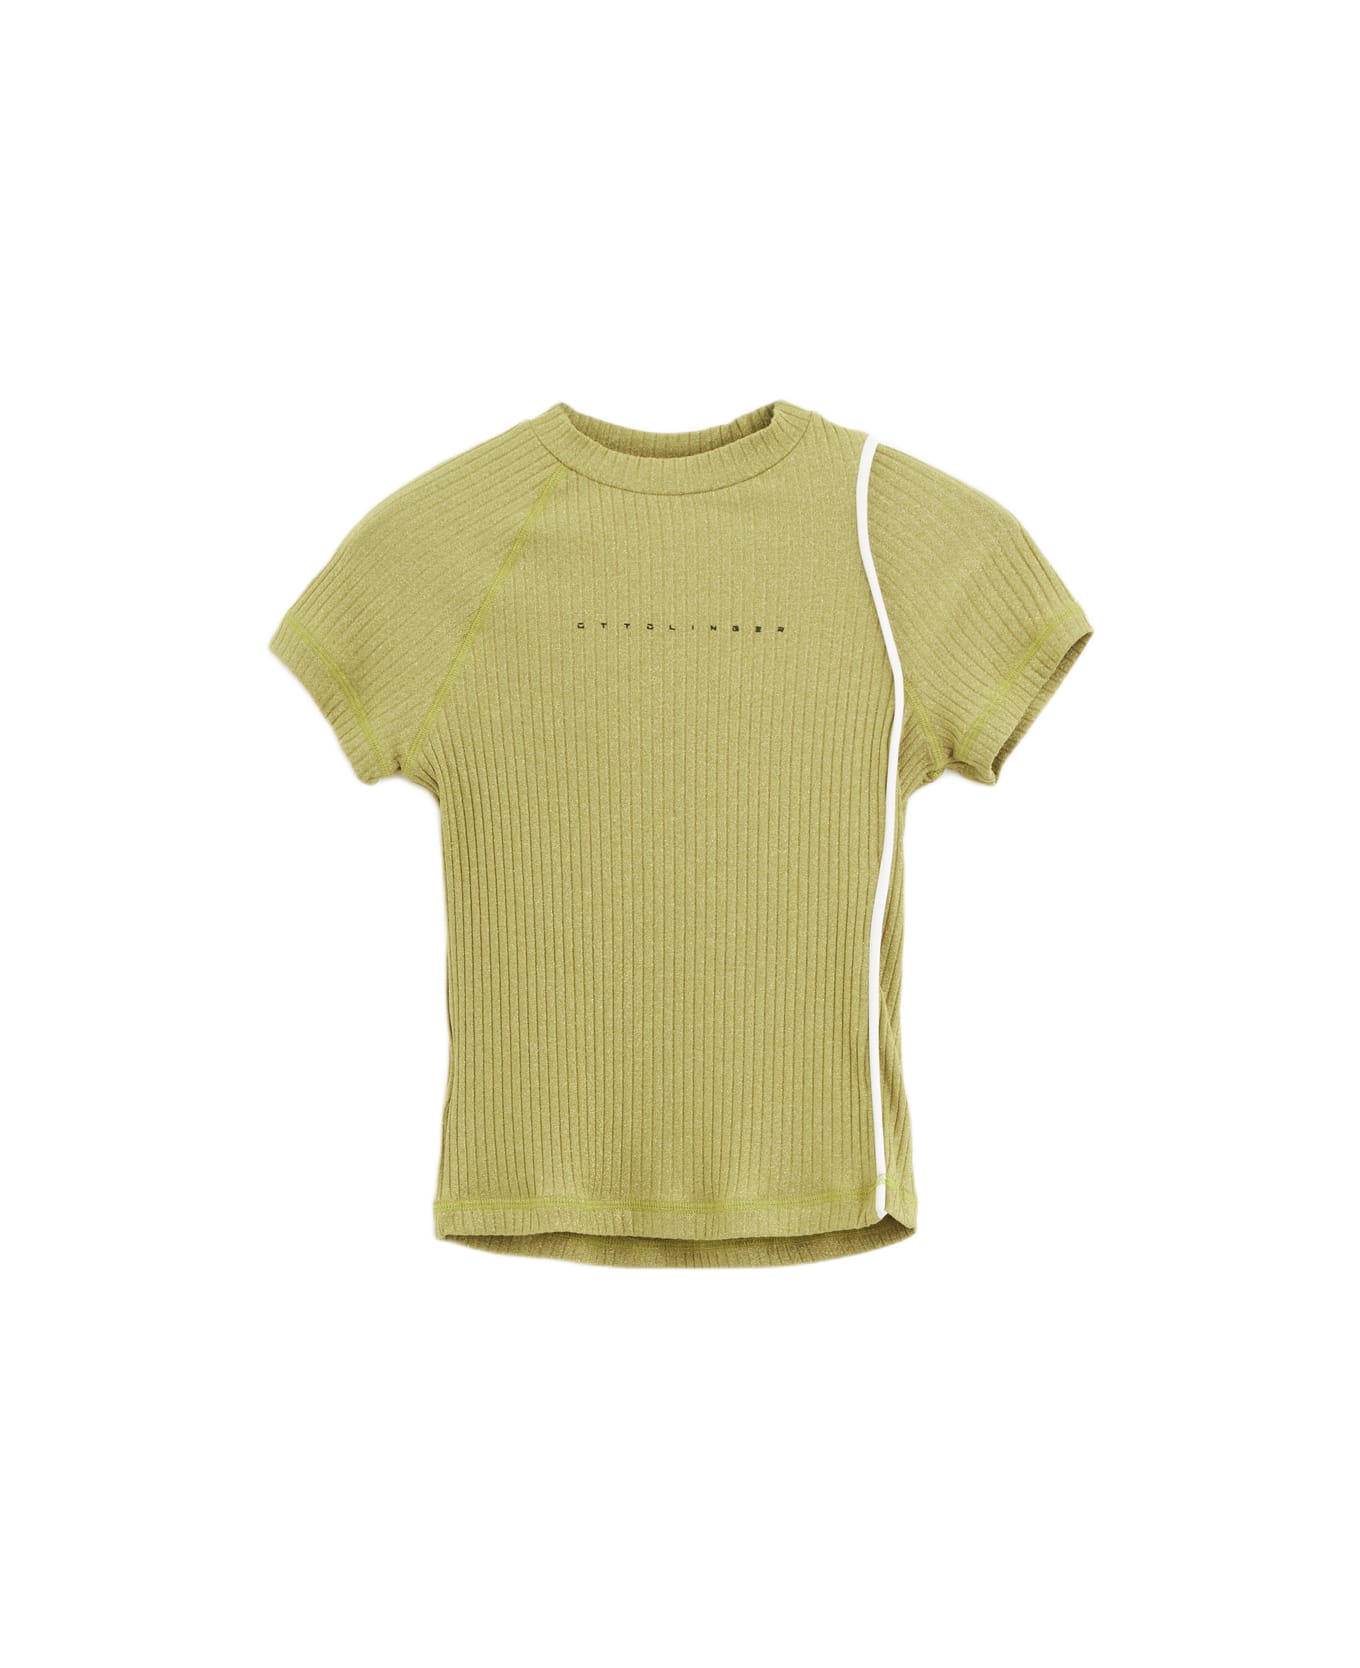 Ottolinger Lurex T-shirt T-shirt - gold ニットウェア